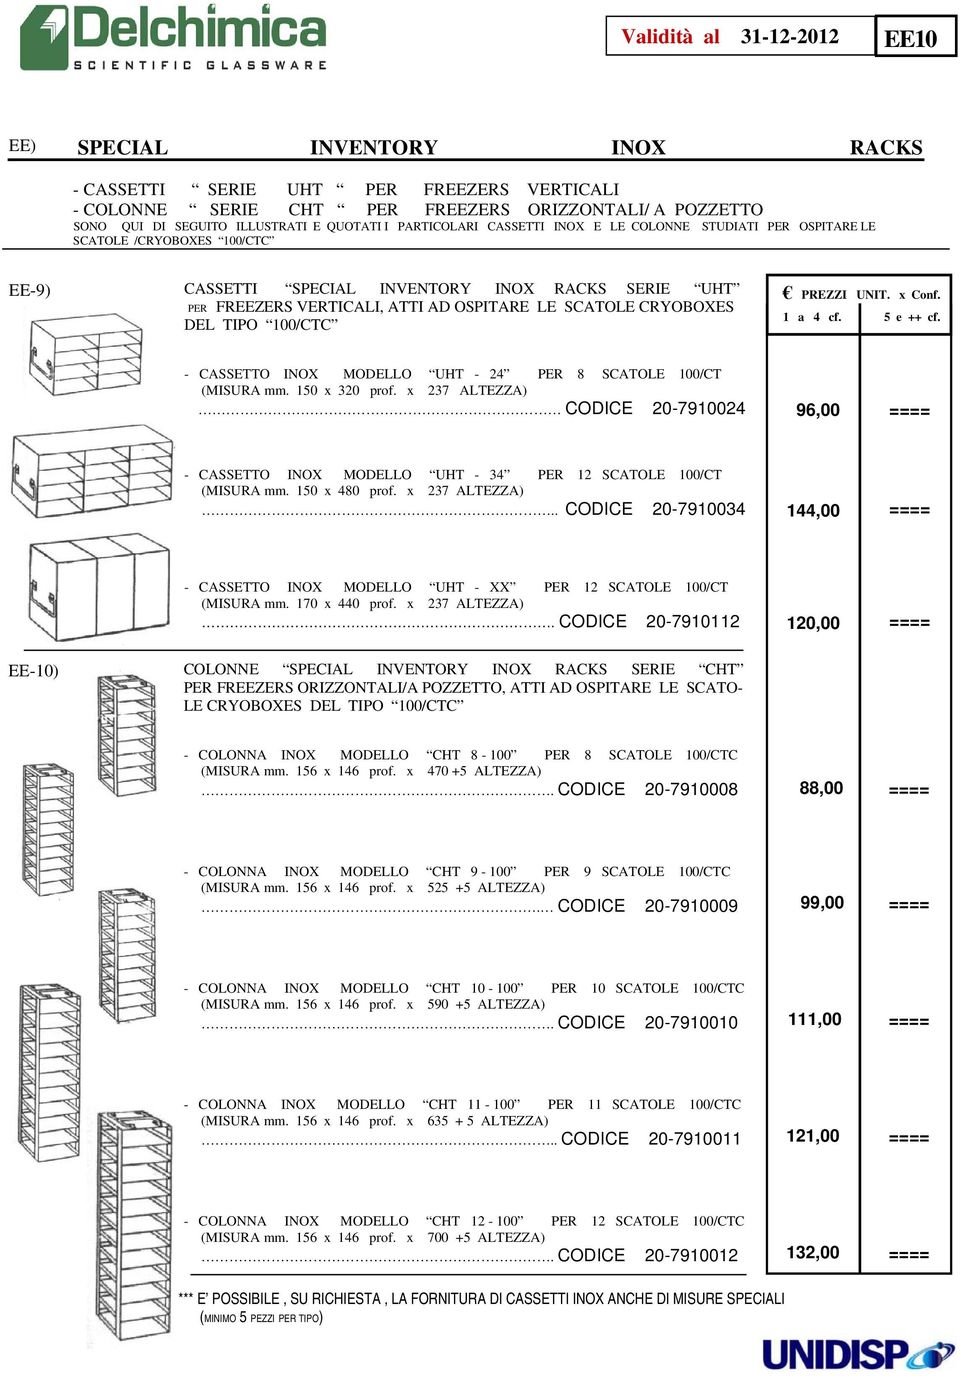 SCATOLE CRYOBOXES DEL TIPO 100/CTC - CASSETTO INOX MODELLO UHT - 24 PER 8 SCATOLE 100/CT (MISURA mm. 150 x 320 prof.